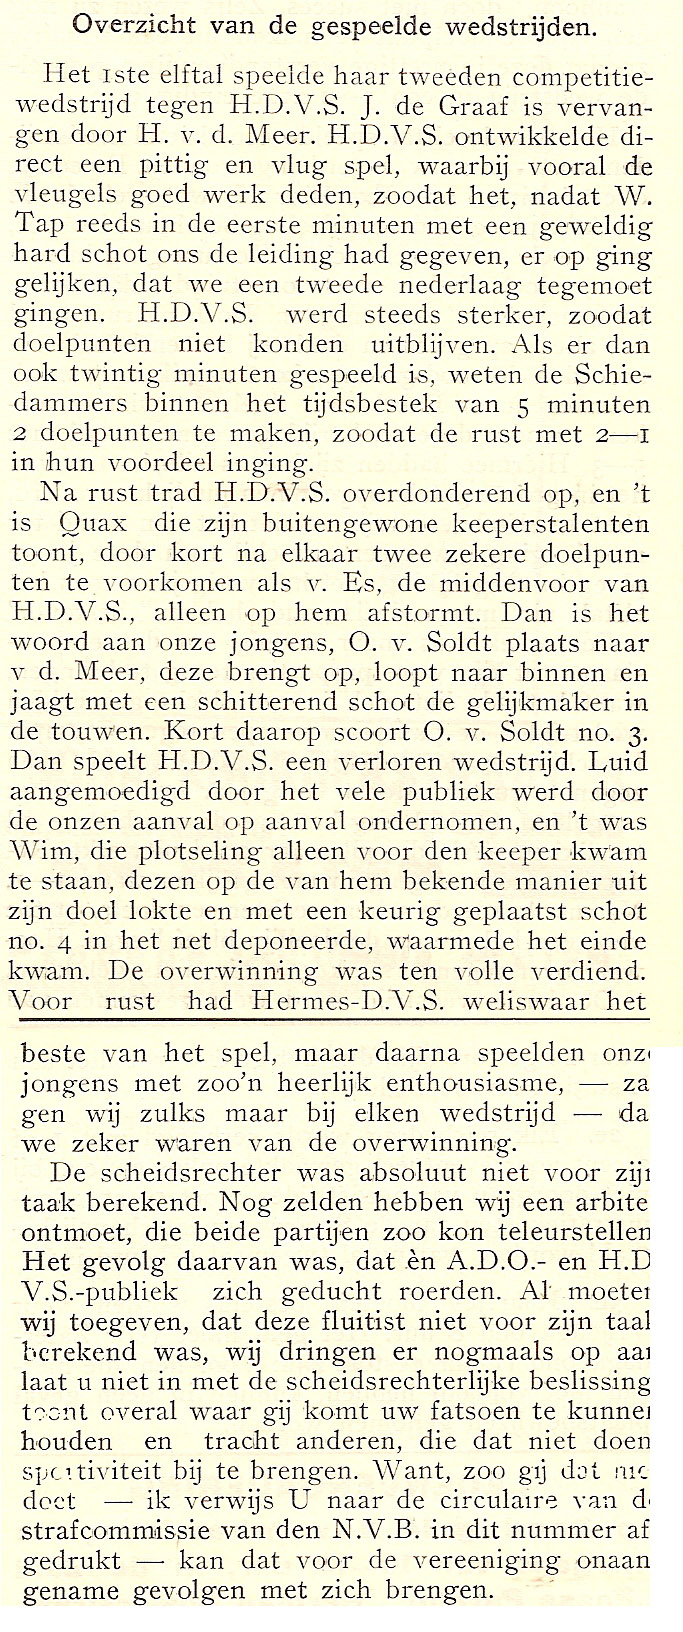 ADO, Hermes DVS, oktober 1926